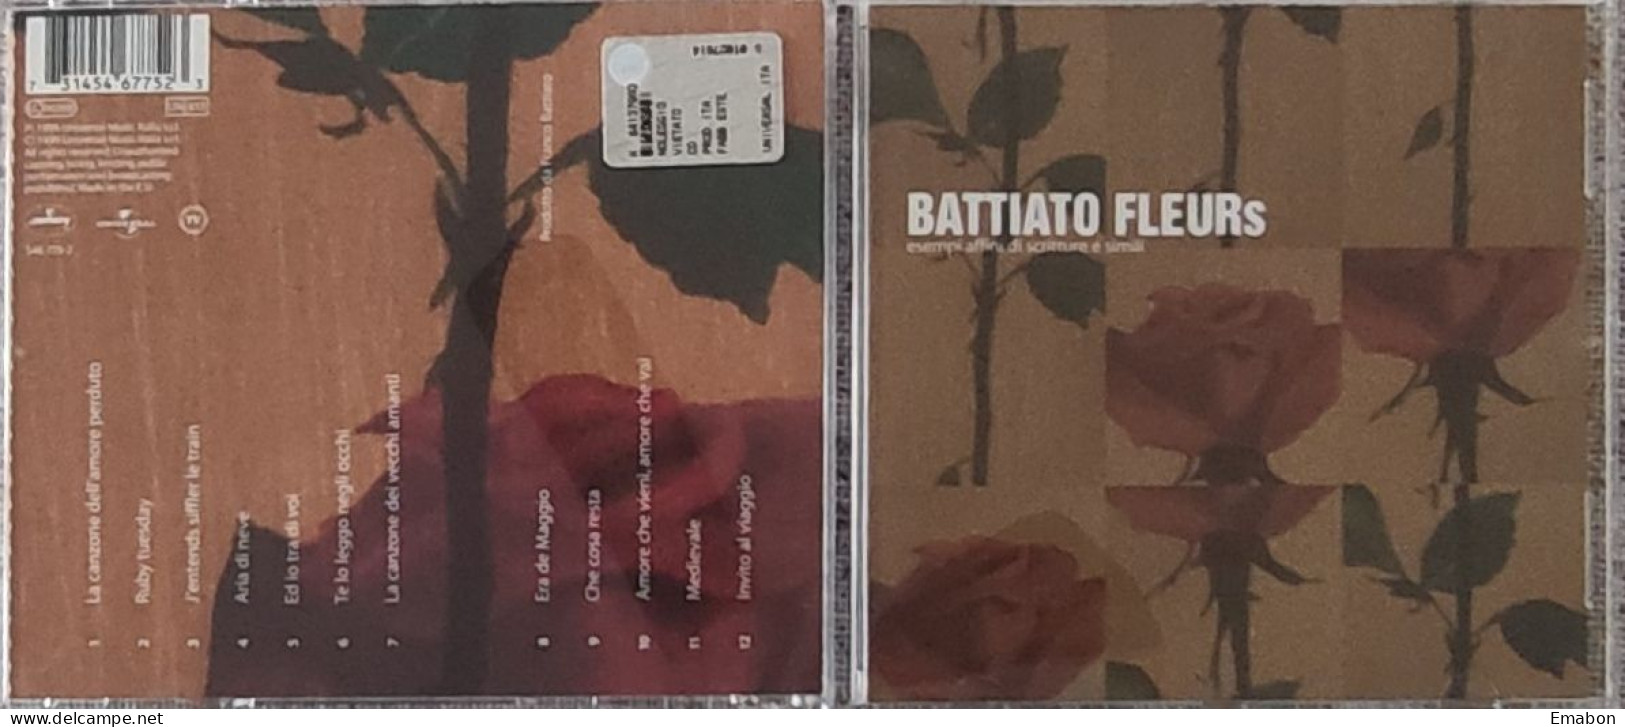 BORGATTA -  Cd  FRANCO BATTIATO   - FLEURS  - UNIVERSAL MUSIC  1999  -  USATO In Buono Stato - Altri - Musica Italiana